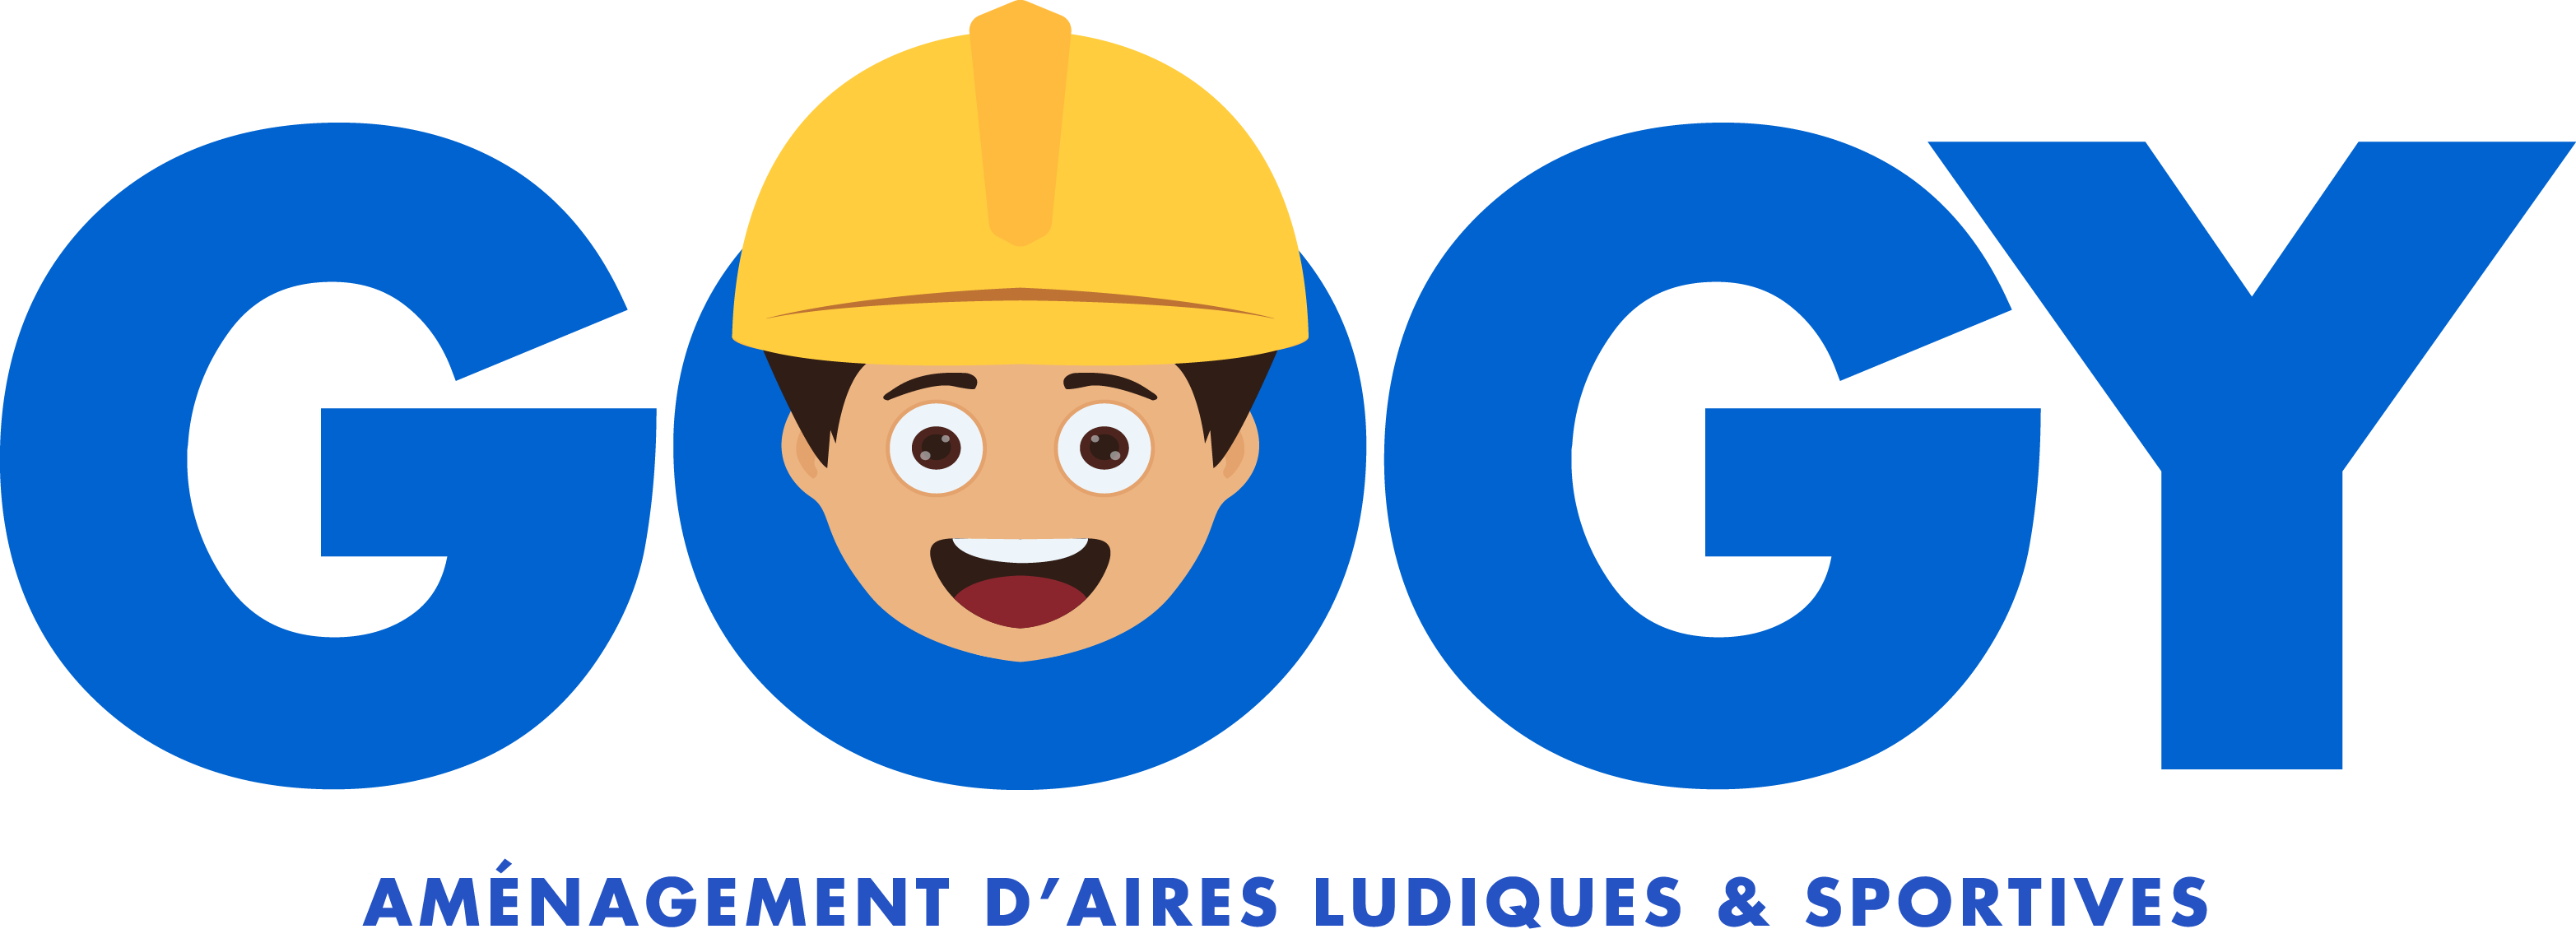 Logo Gogy